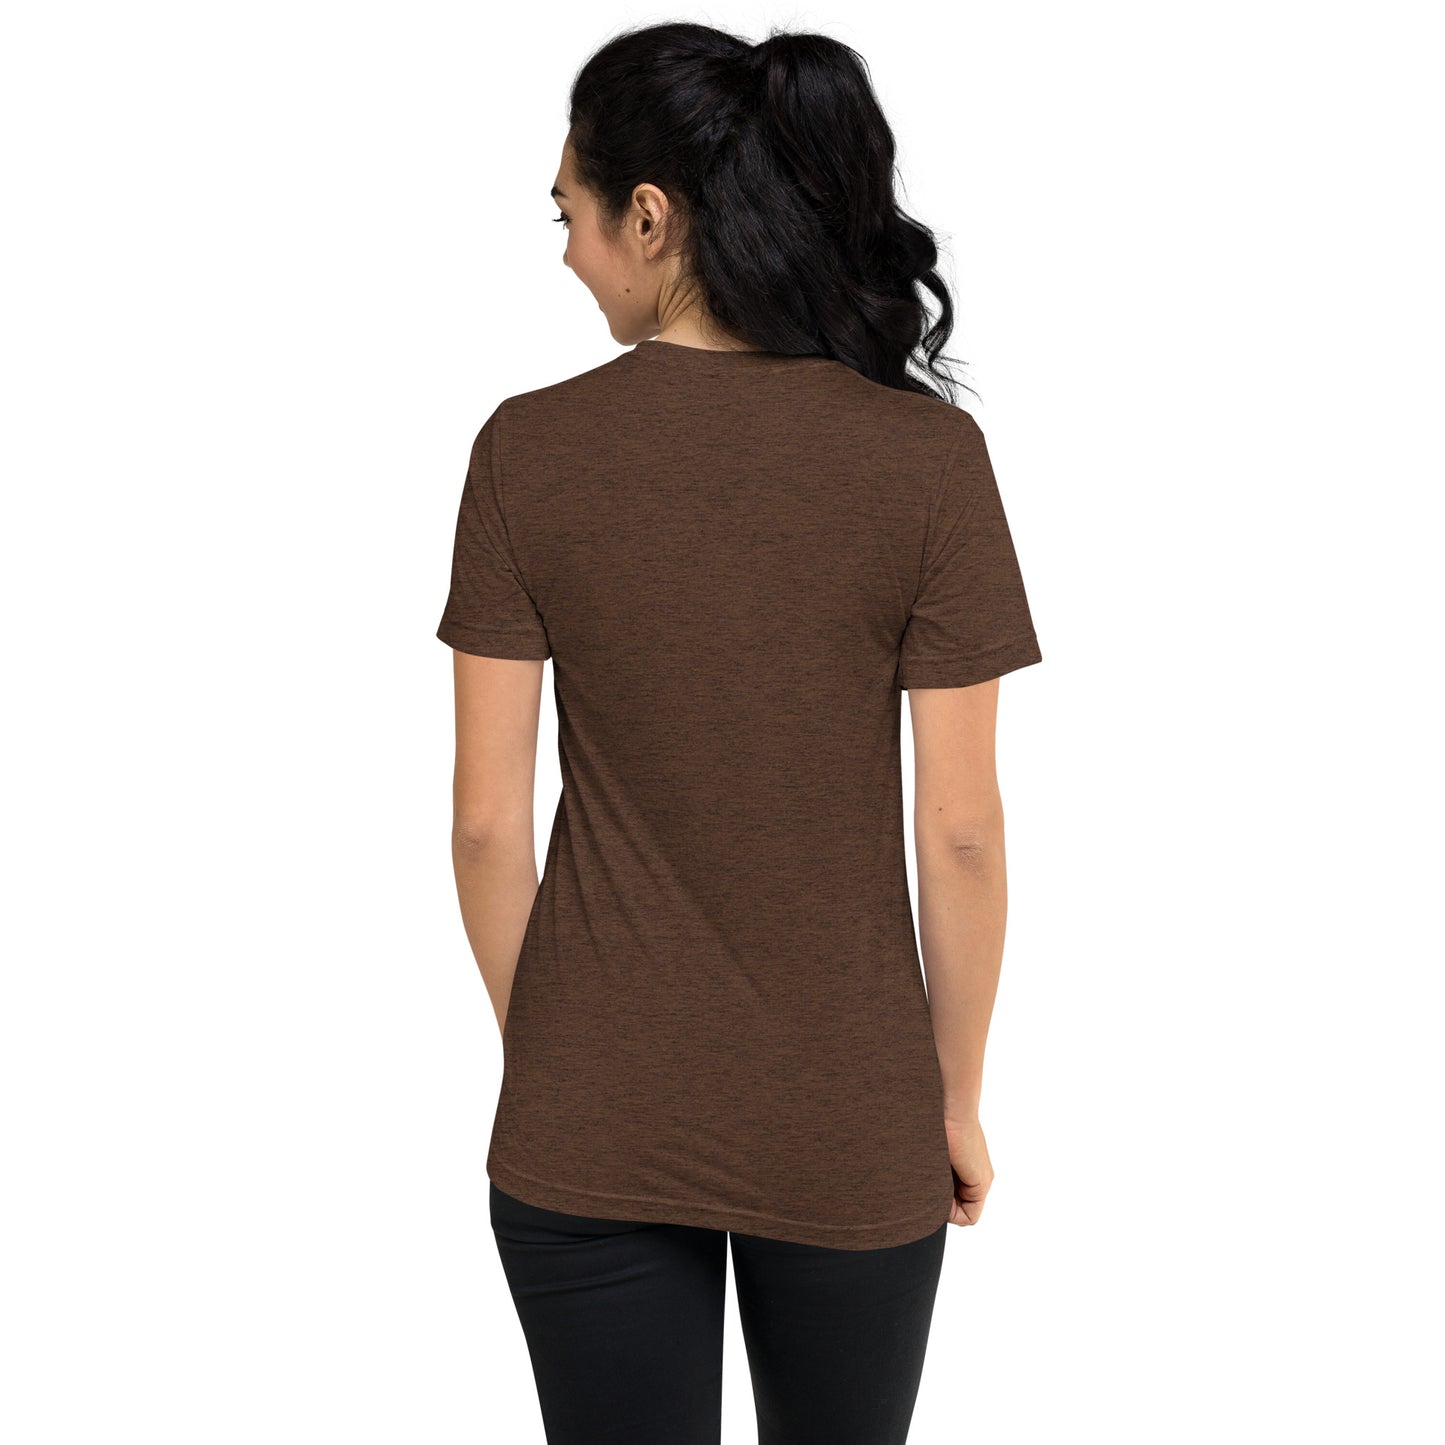 440 Cleveland Short Sleeve Tri-Blend T-Shirt